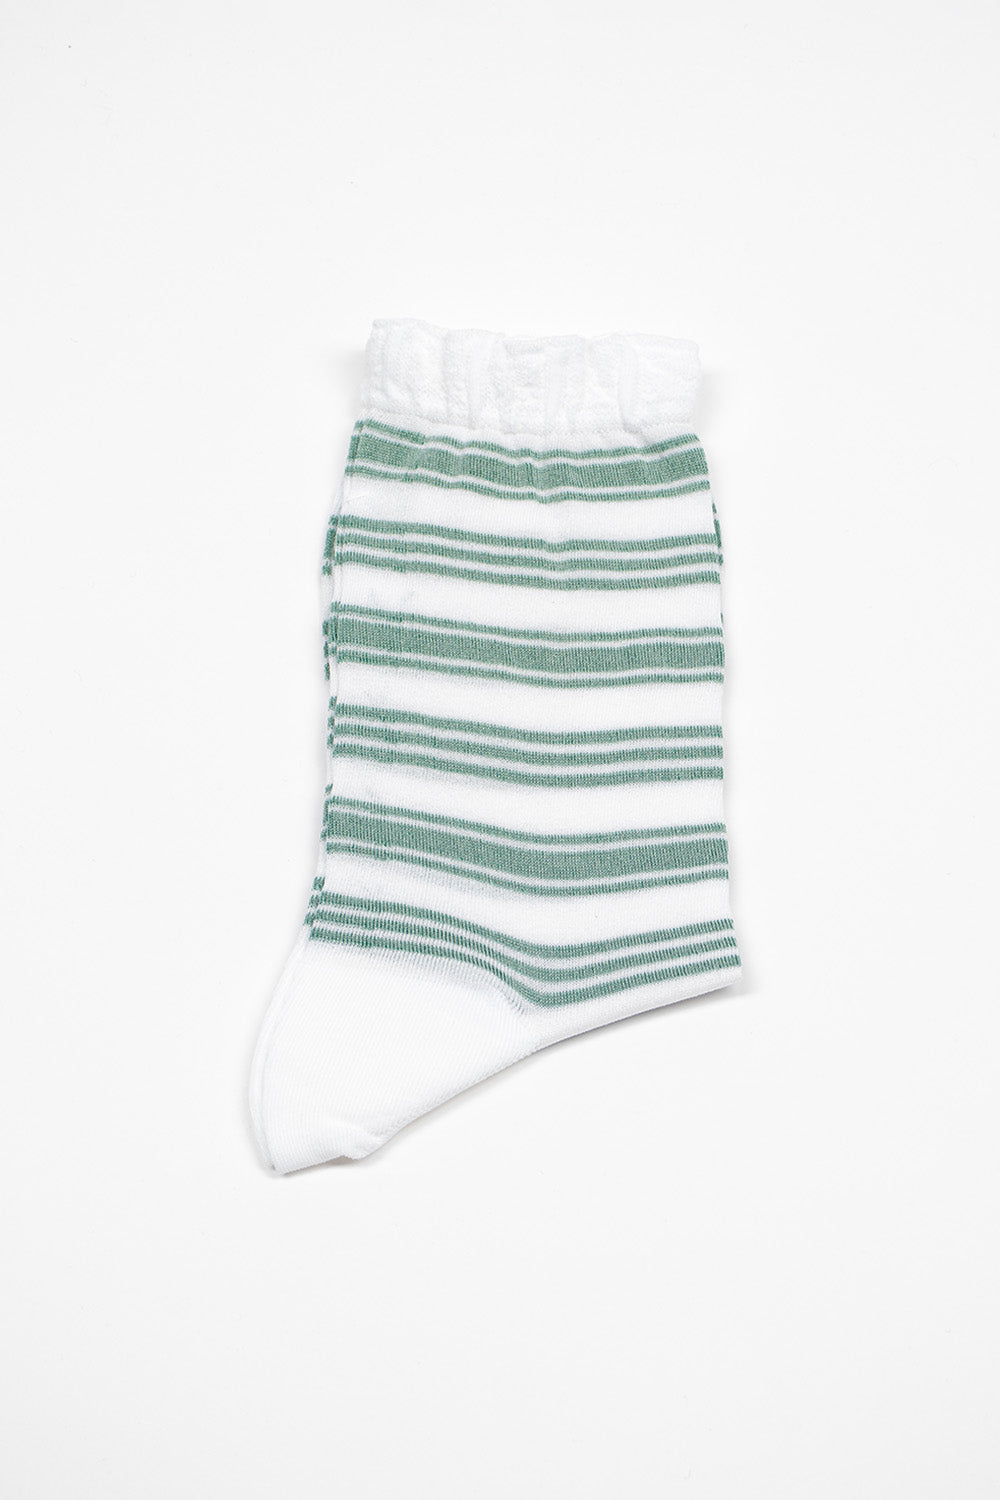 AM-781 Border Socks Green/White